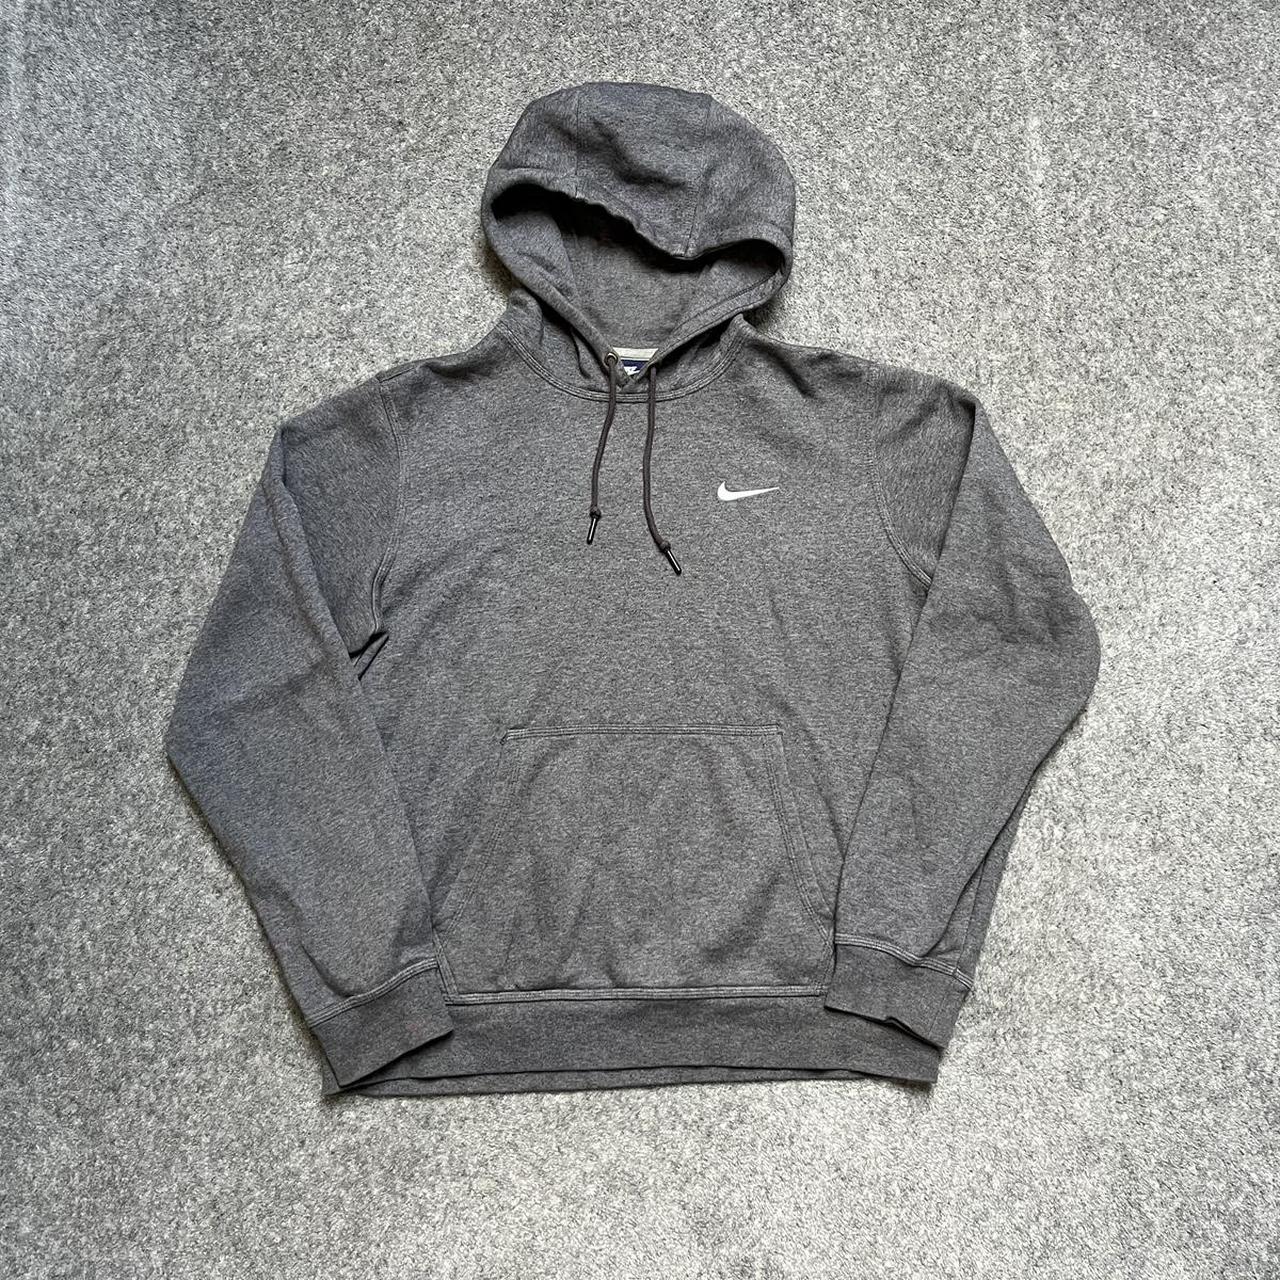 Nike swoosh logo hoodie size large #nike #swoosh - Depop